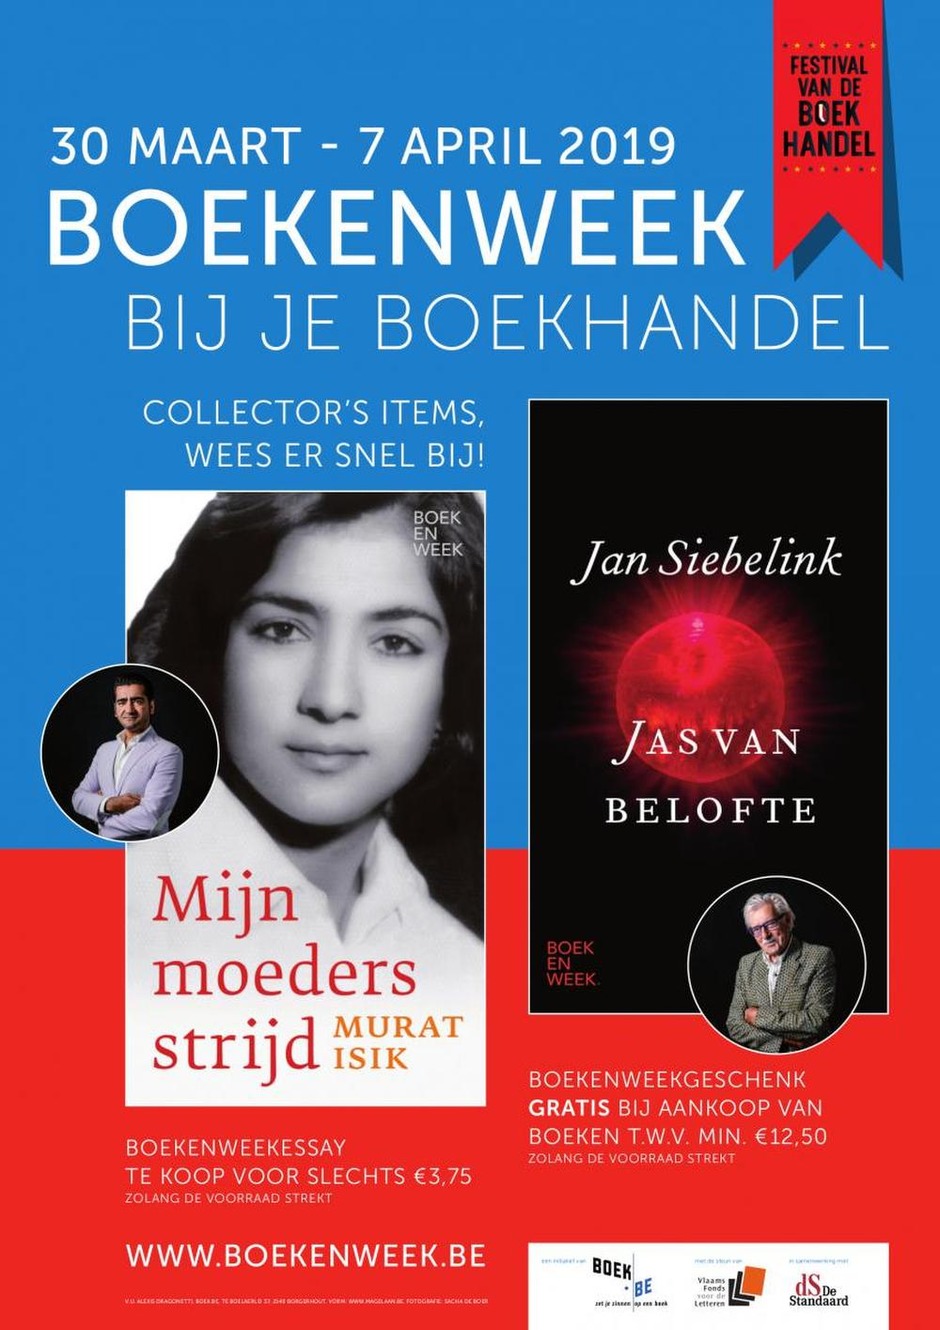 Vlaamse Boekenweek start later dan Nederlandse